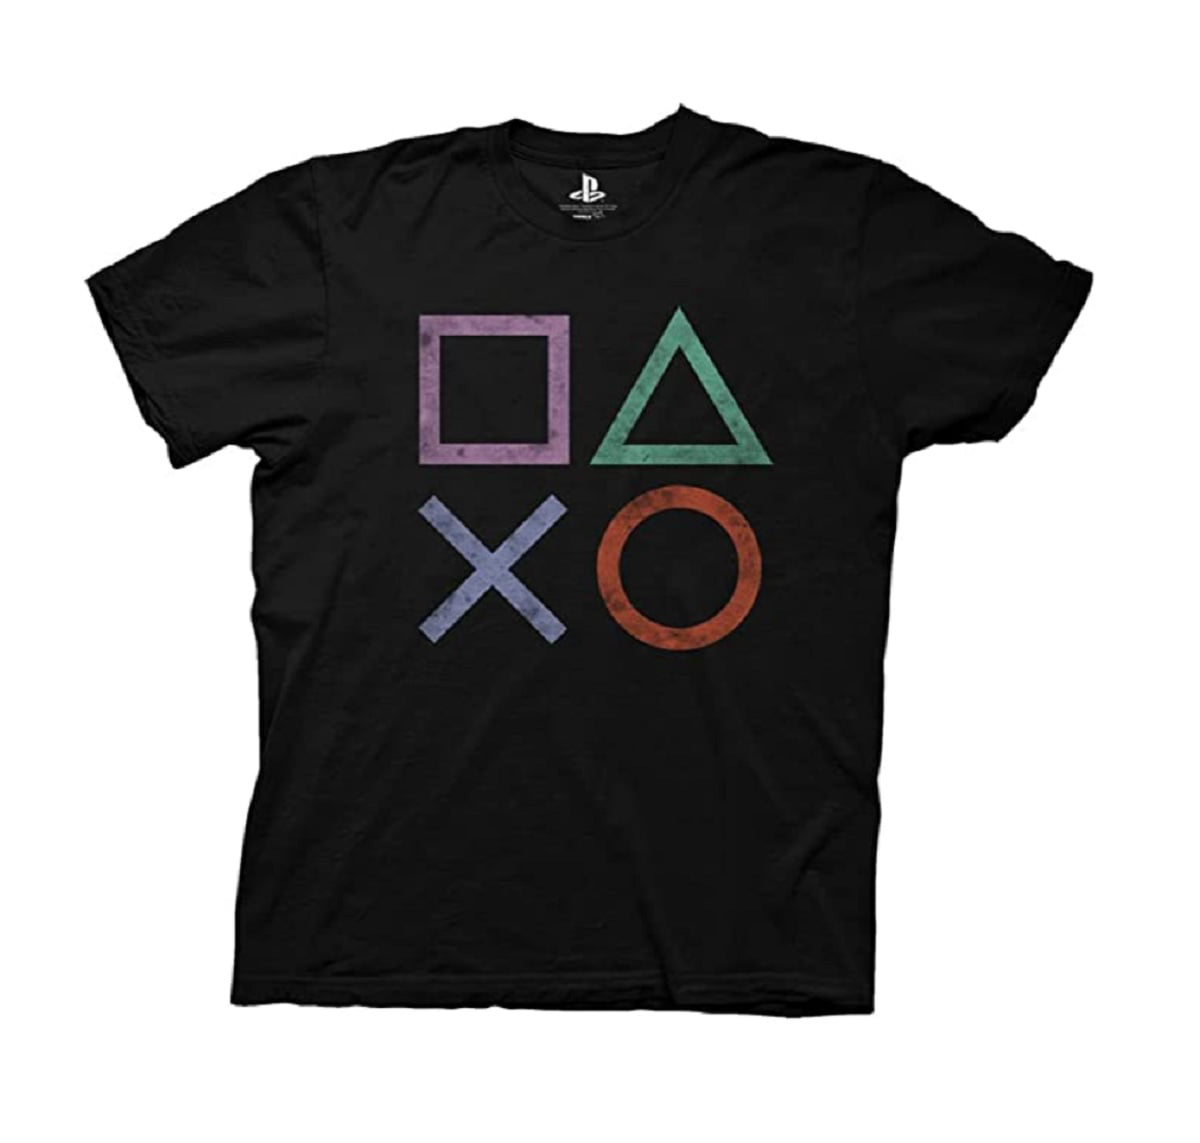 New Mens T-shirt PS4 Play Station Gamer Sony 4 Black S M L XL 2XL 3XL 4XL 5XL